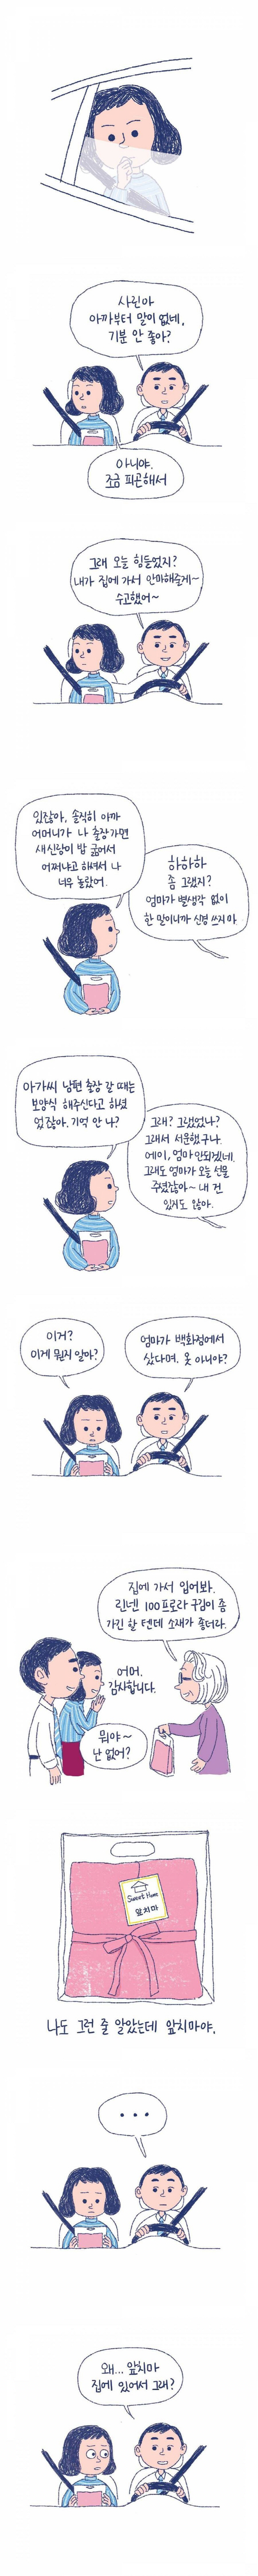 [토요워치-세계로 가는 K웹툰]K웹툰은 김정은 방남·최순실을 알고 있었다?